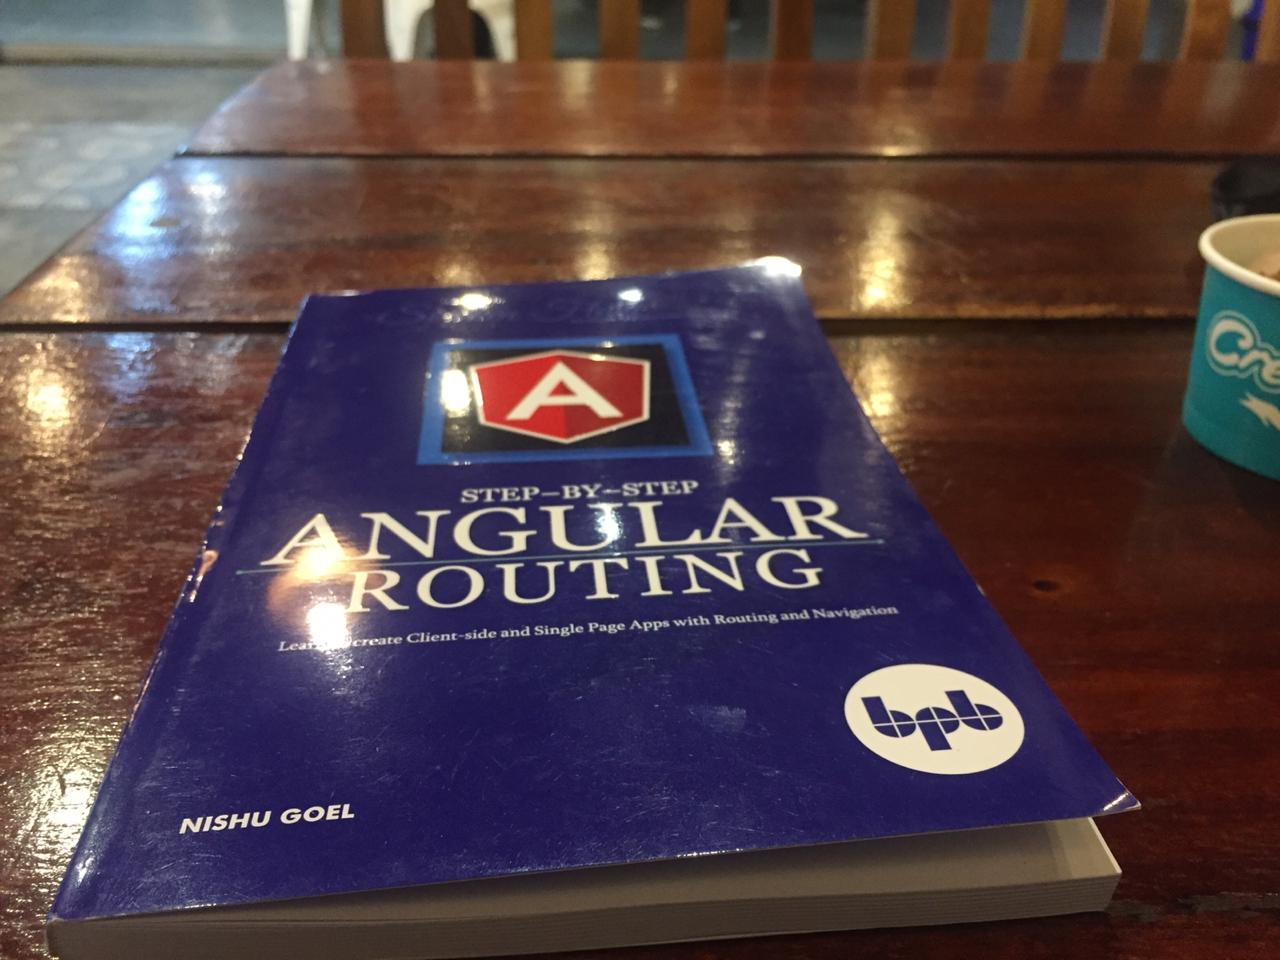 Cuốn sách về Định tuyến Angular trên bảng.